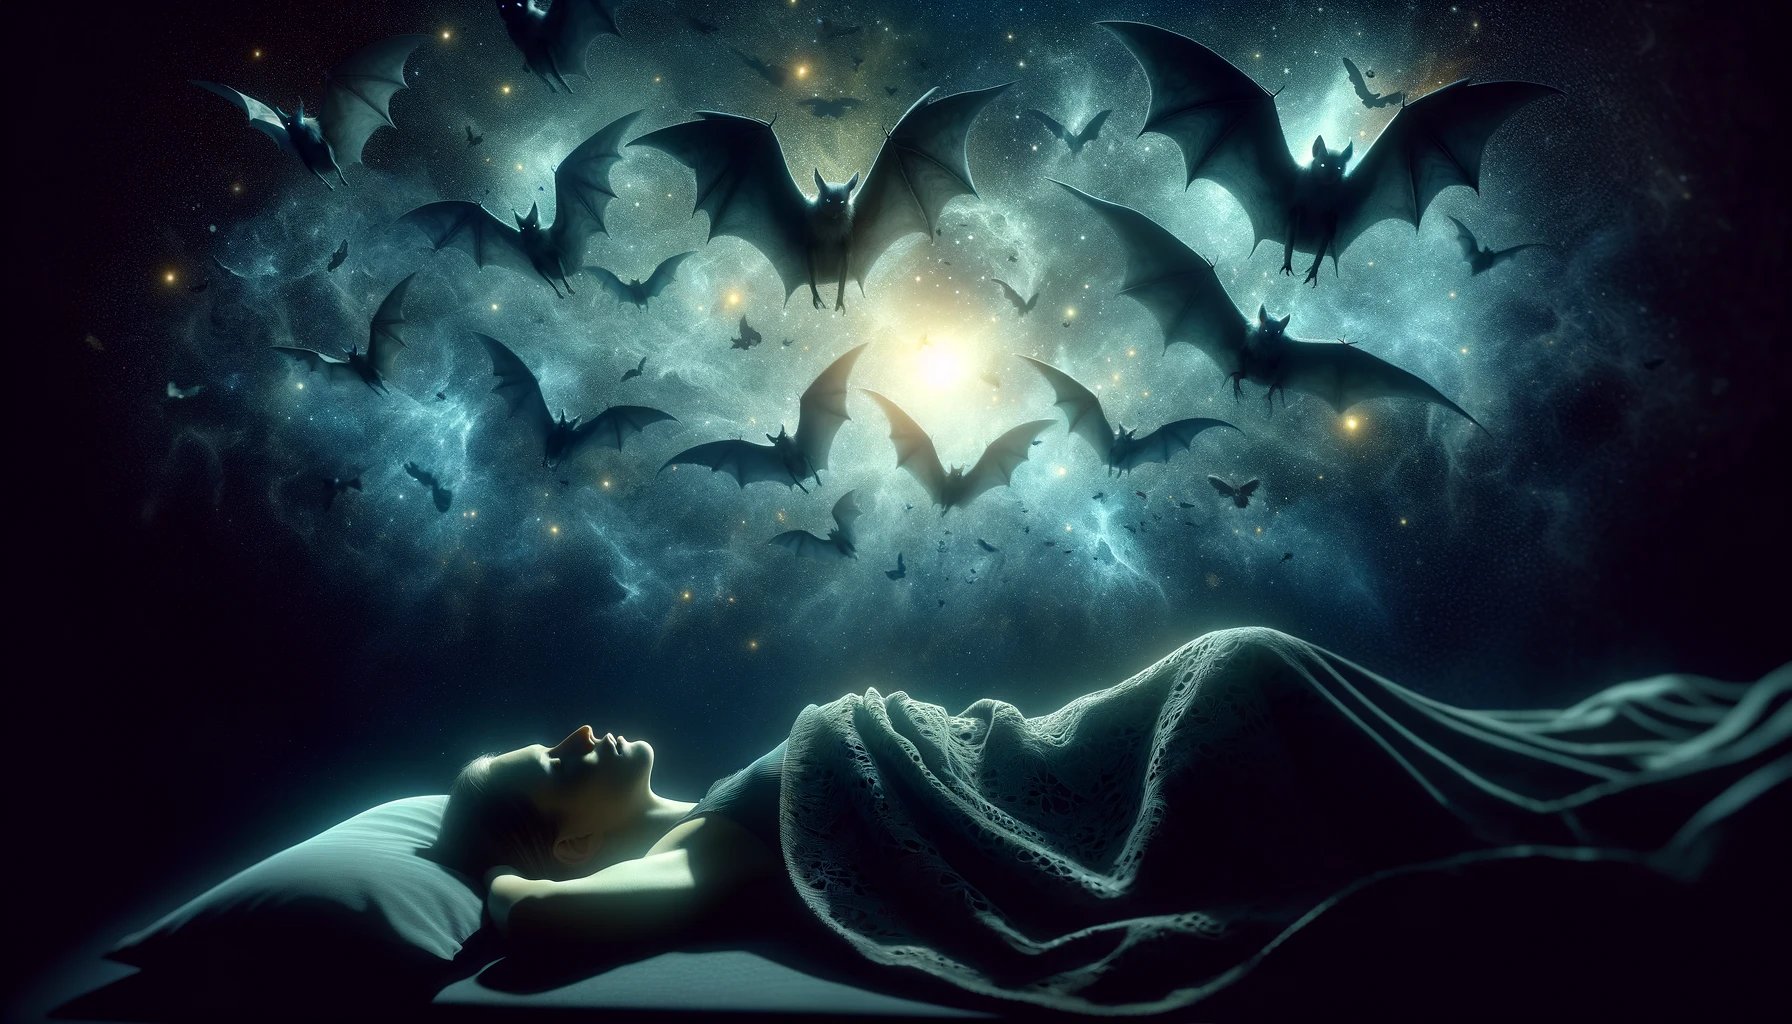 simbolismo de murciélagos en el mundo de los sueños